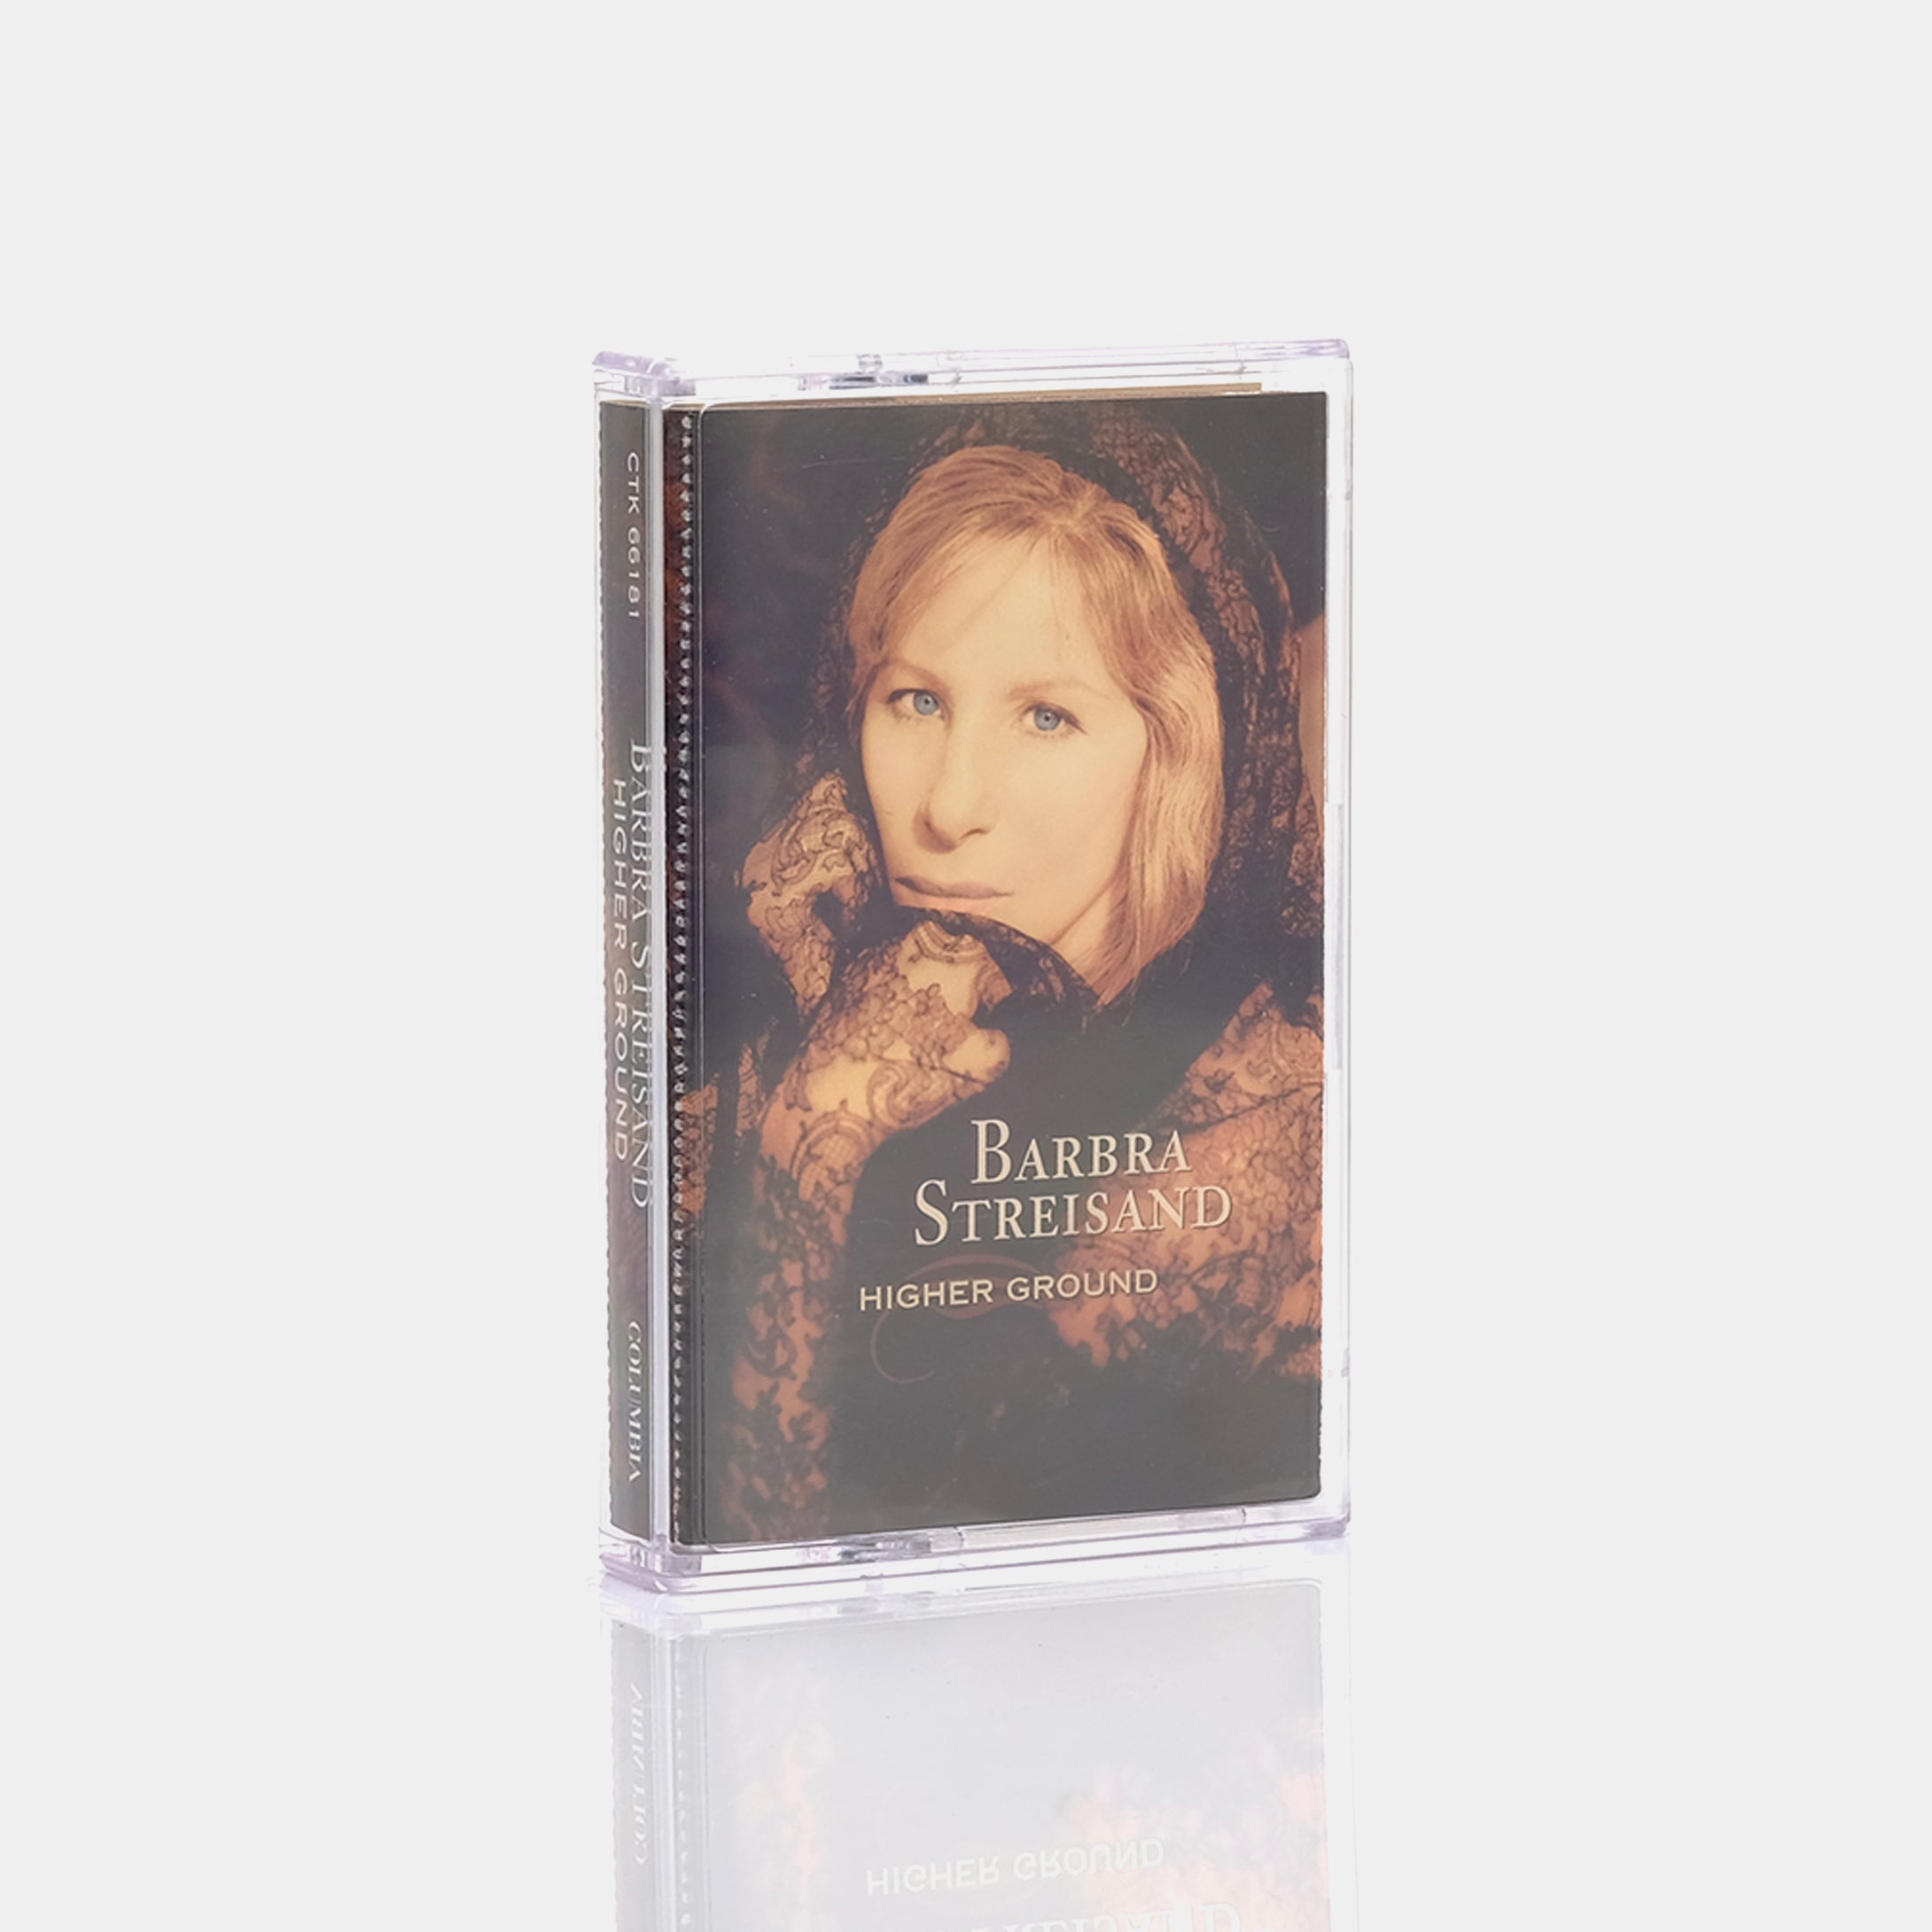 Barbra Streisand - Higher Ground Cassette Tape